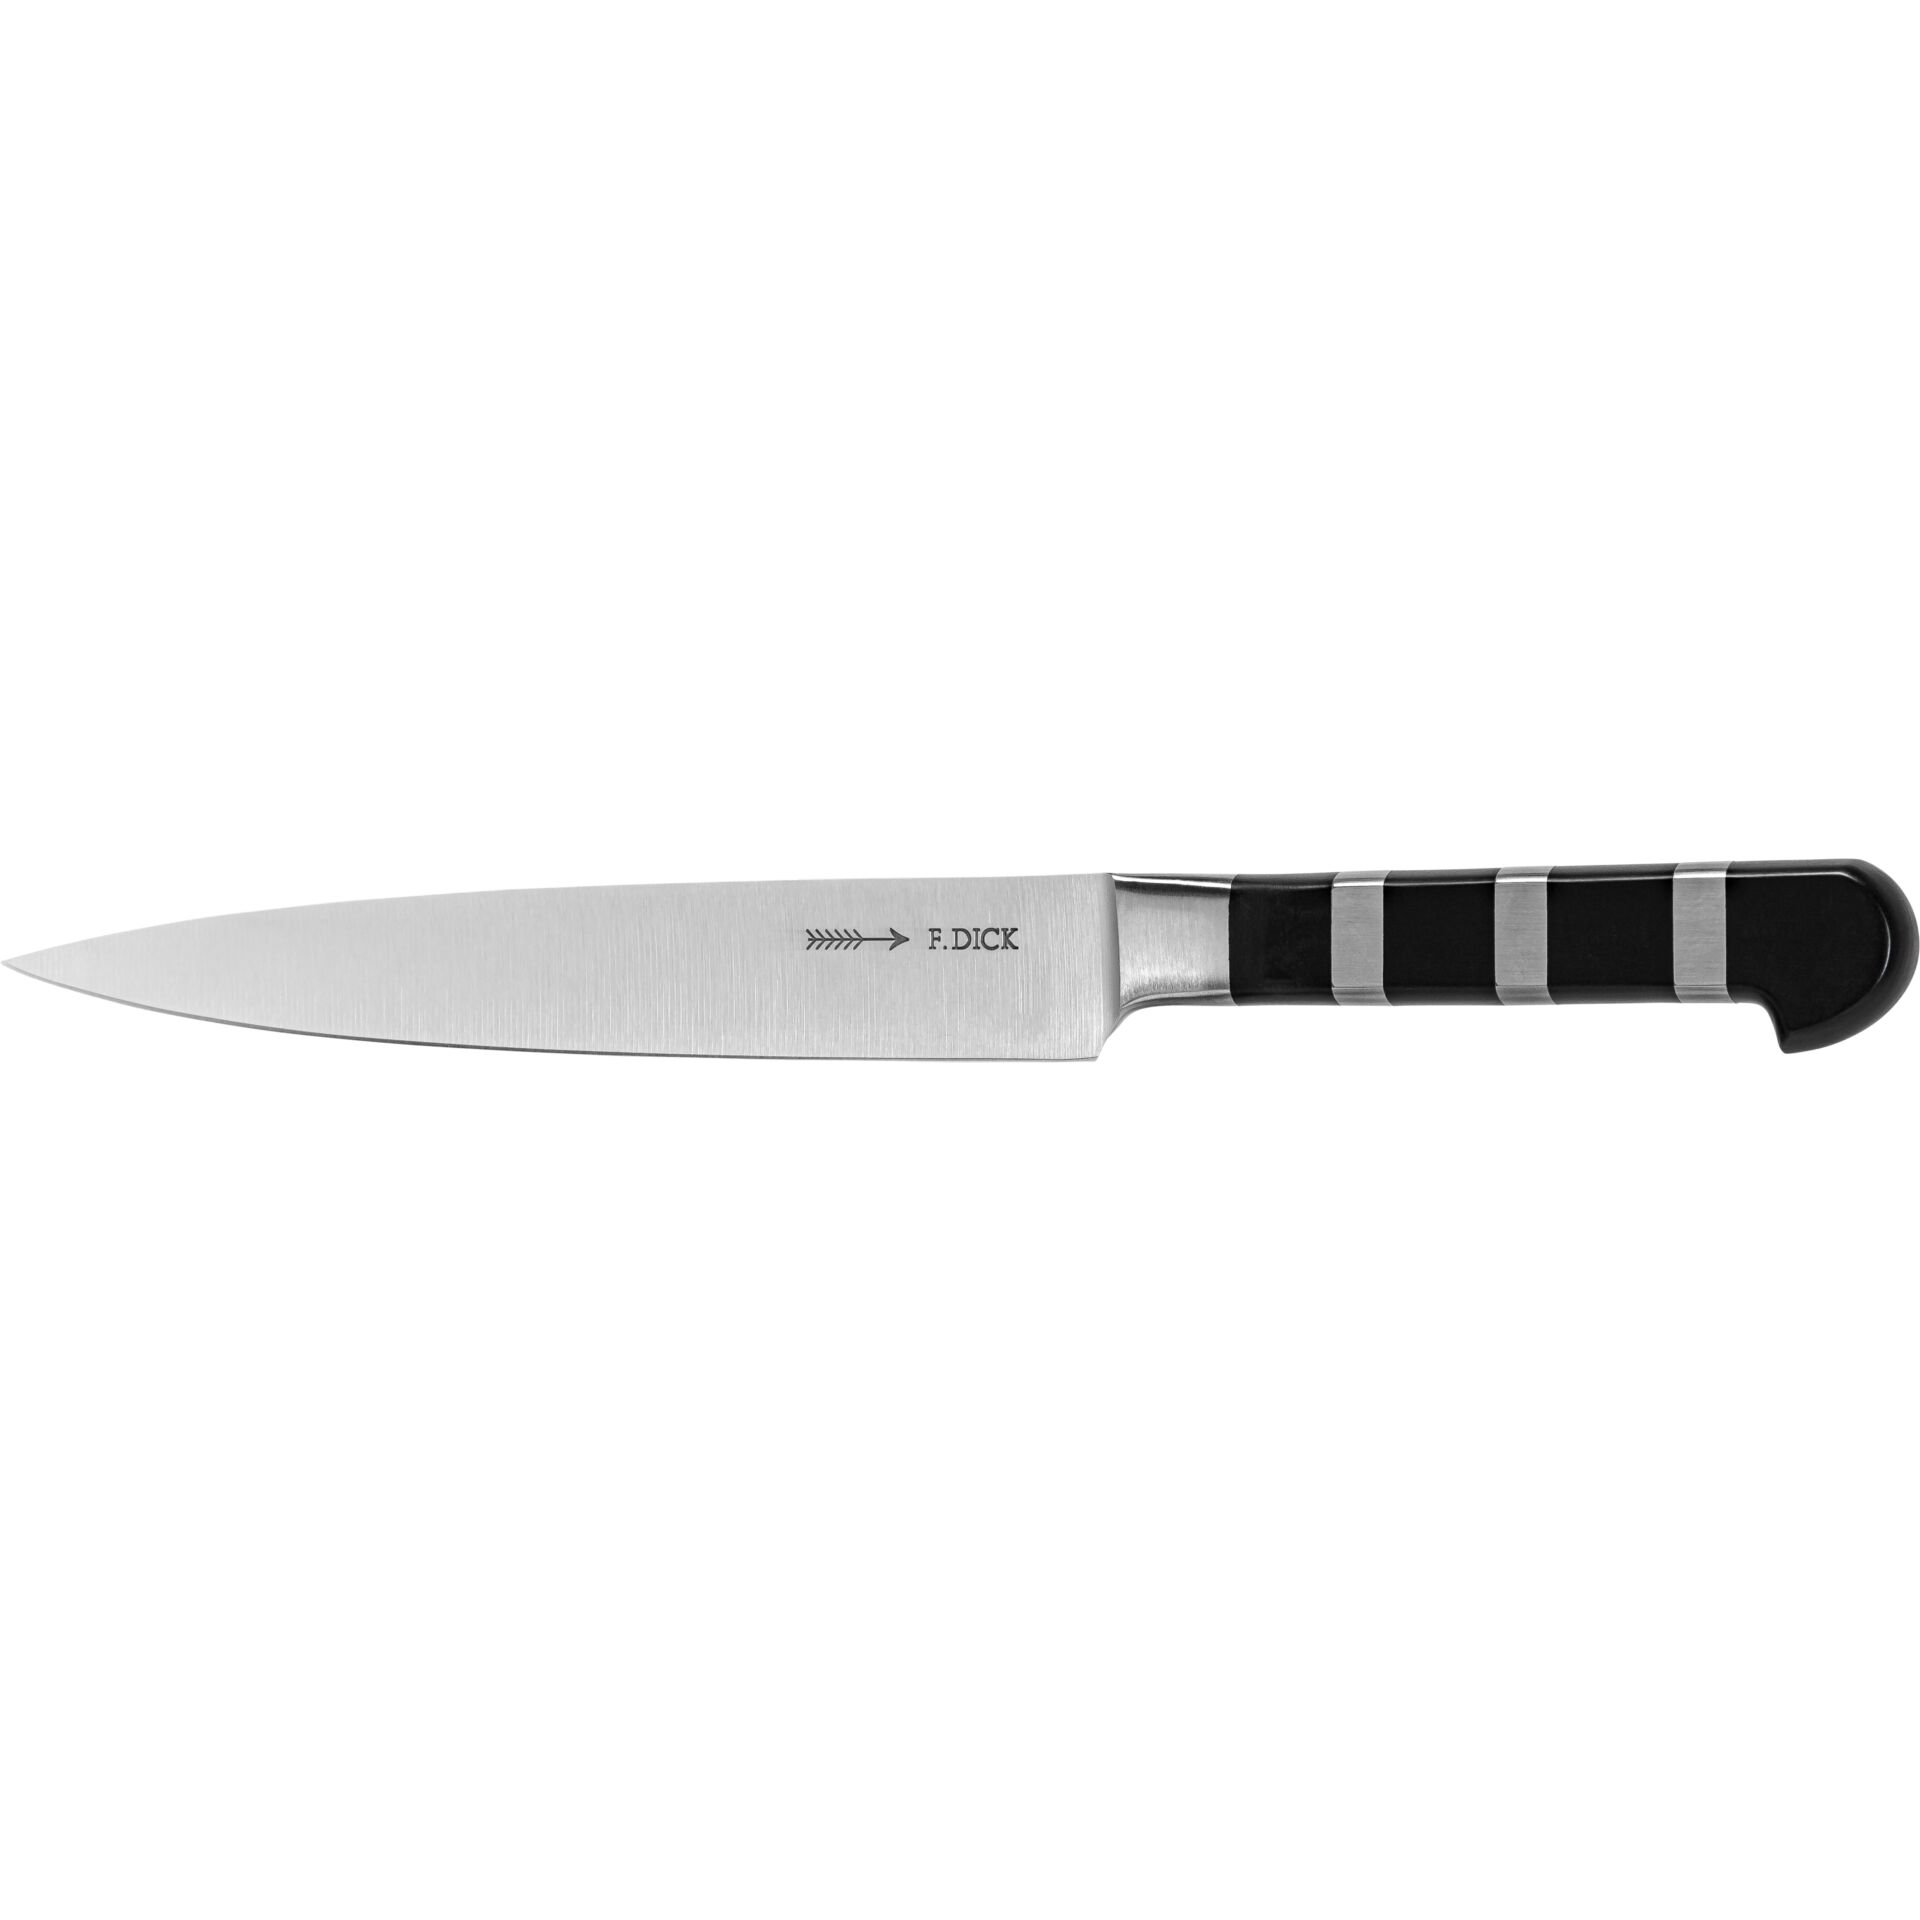 Dick coltello per filettare 18 cm